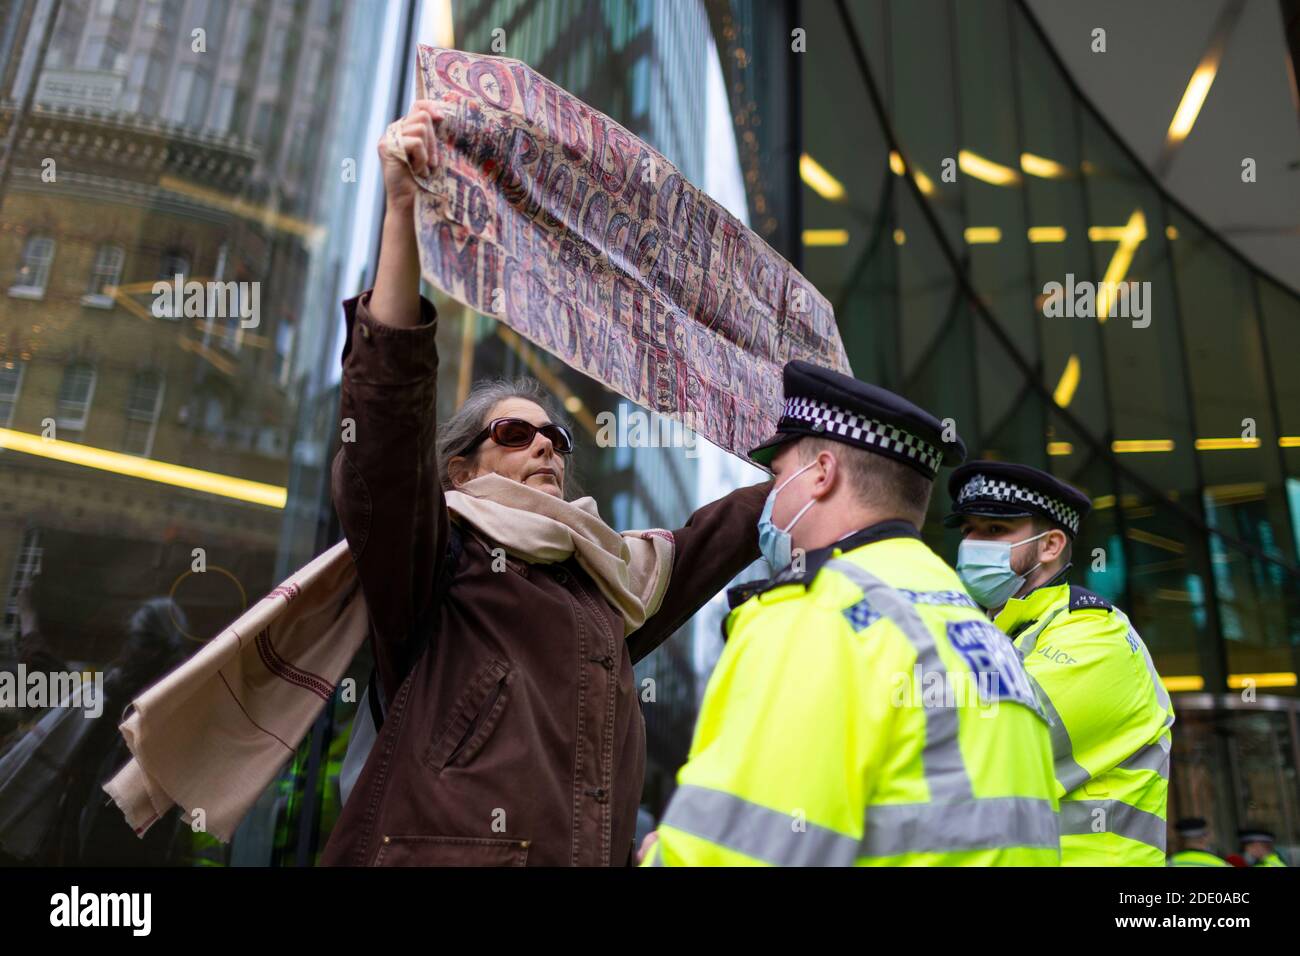 Il manifestante tiene un cartello davanti alla polizia durante la protesta contro la vaccinazione, Bill e Melinda Gates Foundation Office, Londra, 24 novembre 2020 Foto Stock